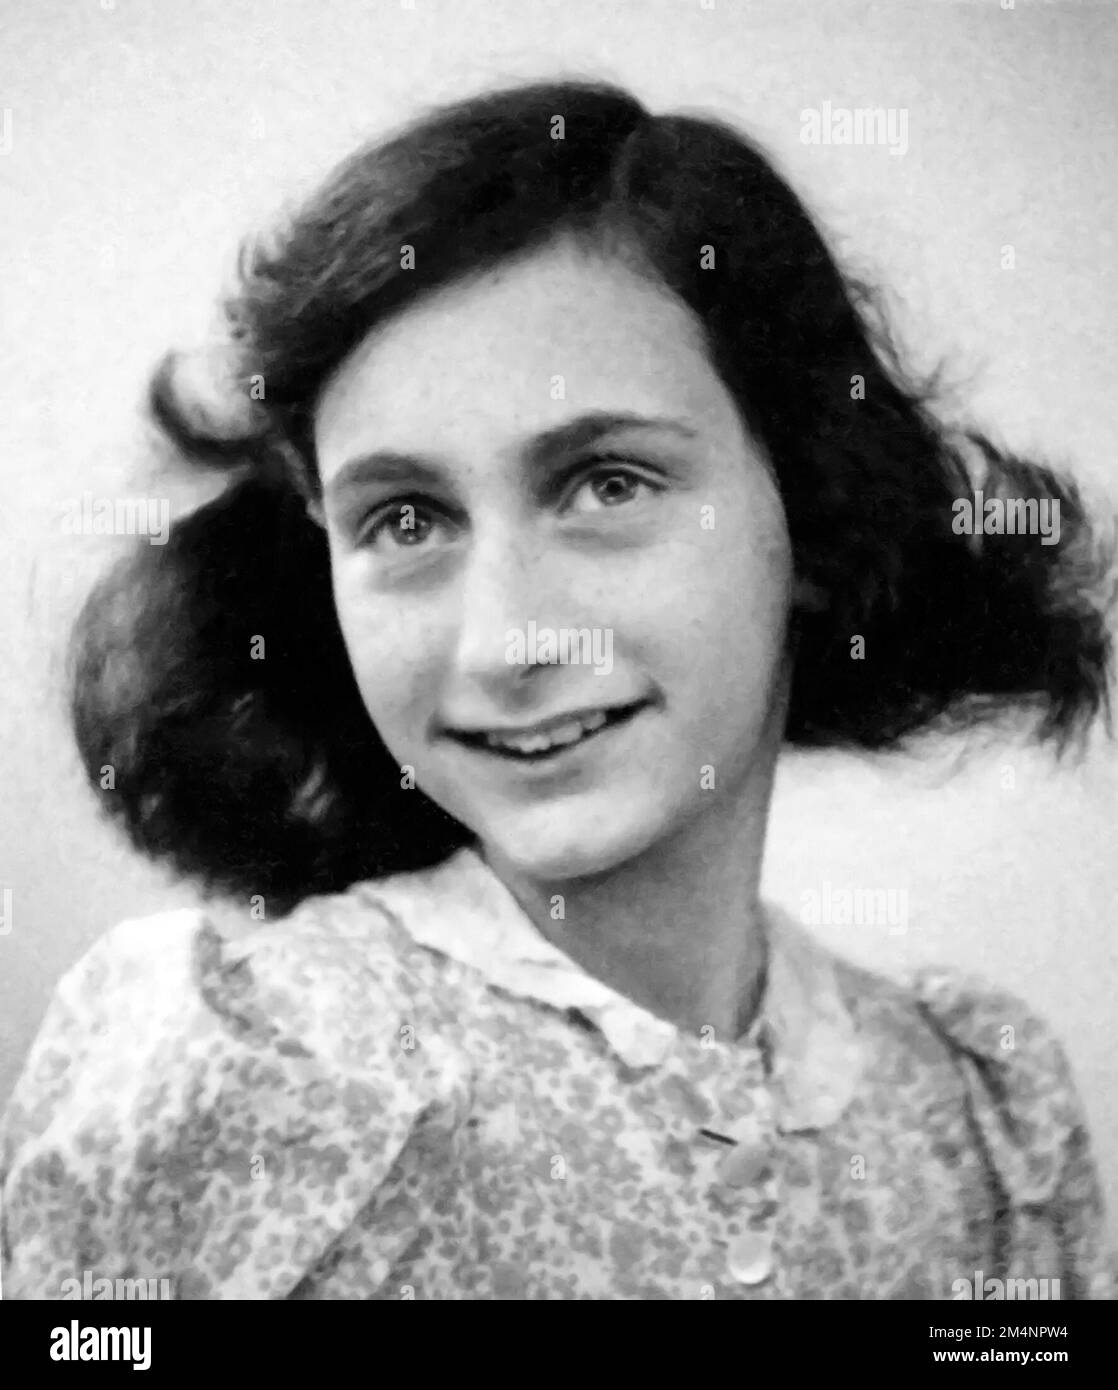 Anne Frank. Passeport photo d'Annelies Marie 'Anne' Frank (1929-1945), la jeune fille juive qui est journal de la vie sous occupation nazie a rendu célèbre, 1942 Banque D'Images